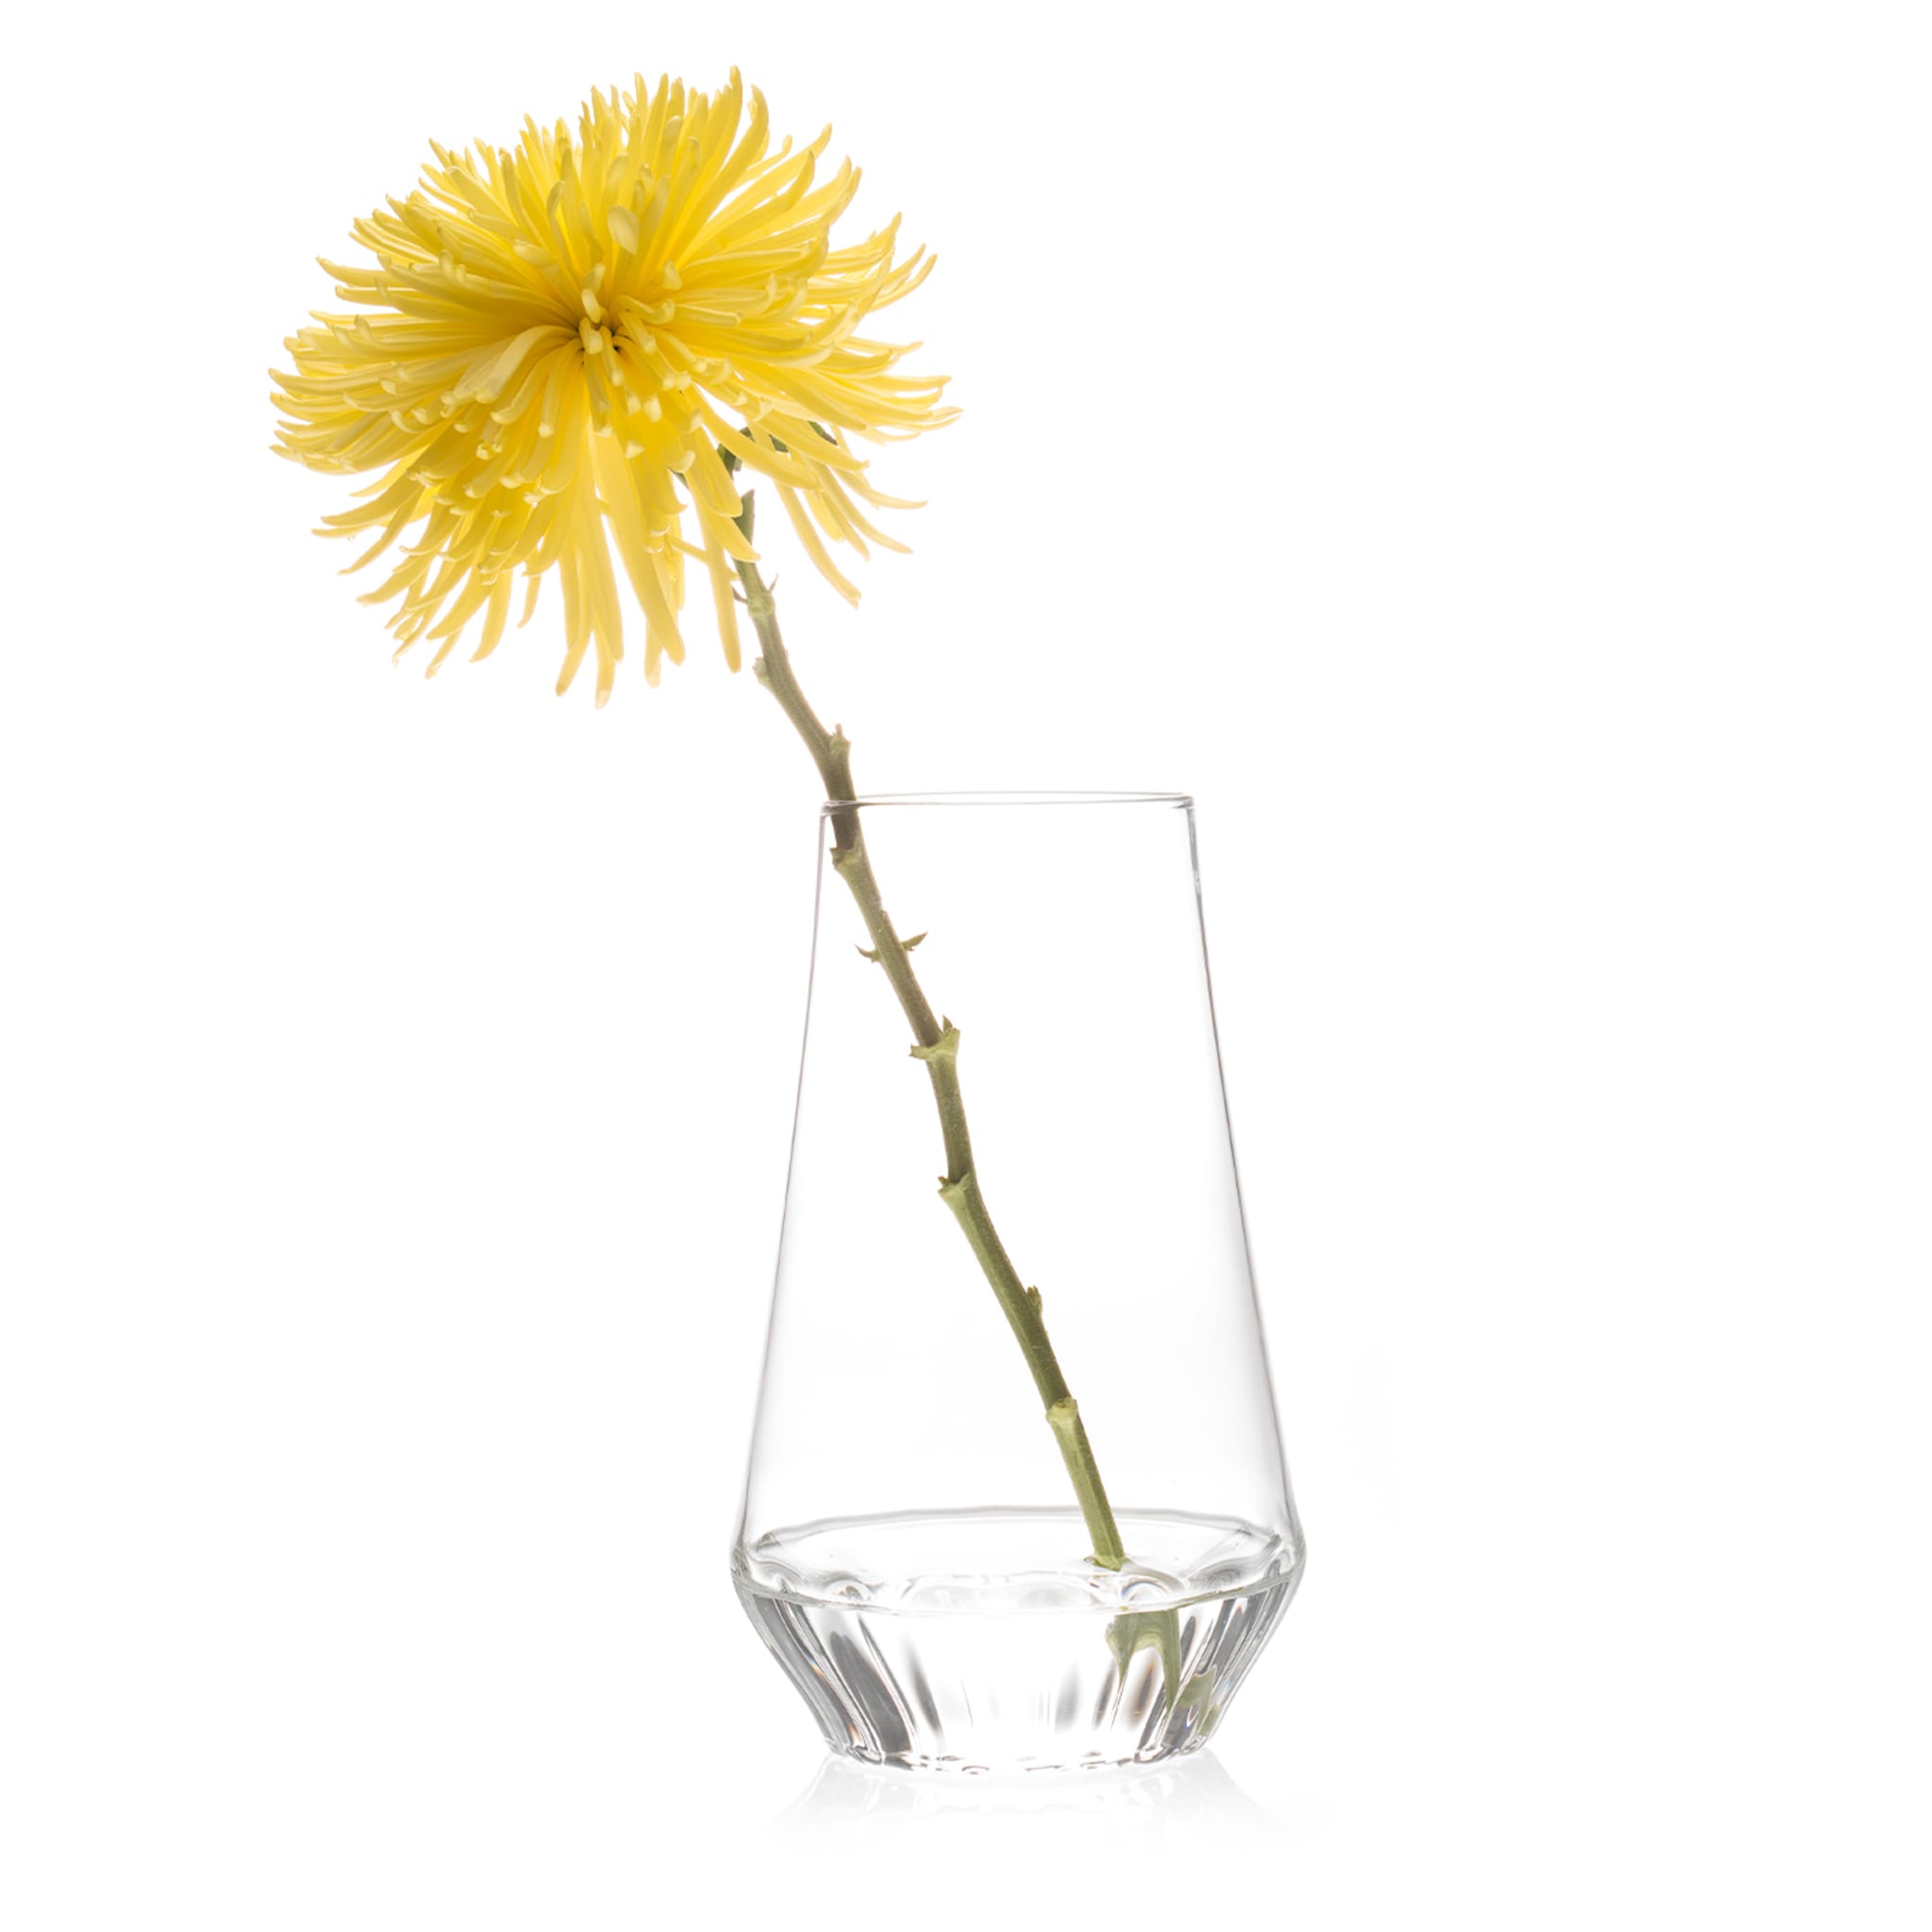 Rossi Glass Vase - Medium - Alternative view 1